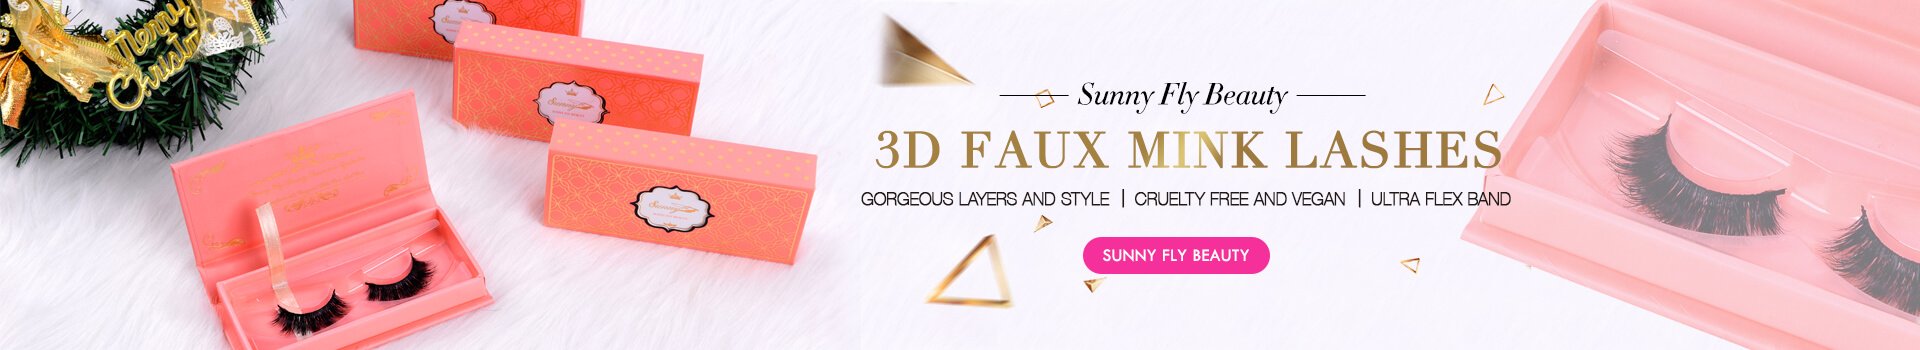 3D Faux Mink Lashes SD16